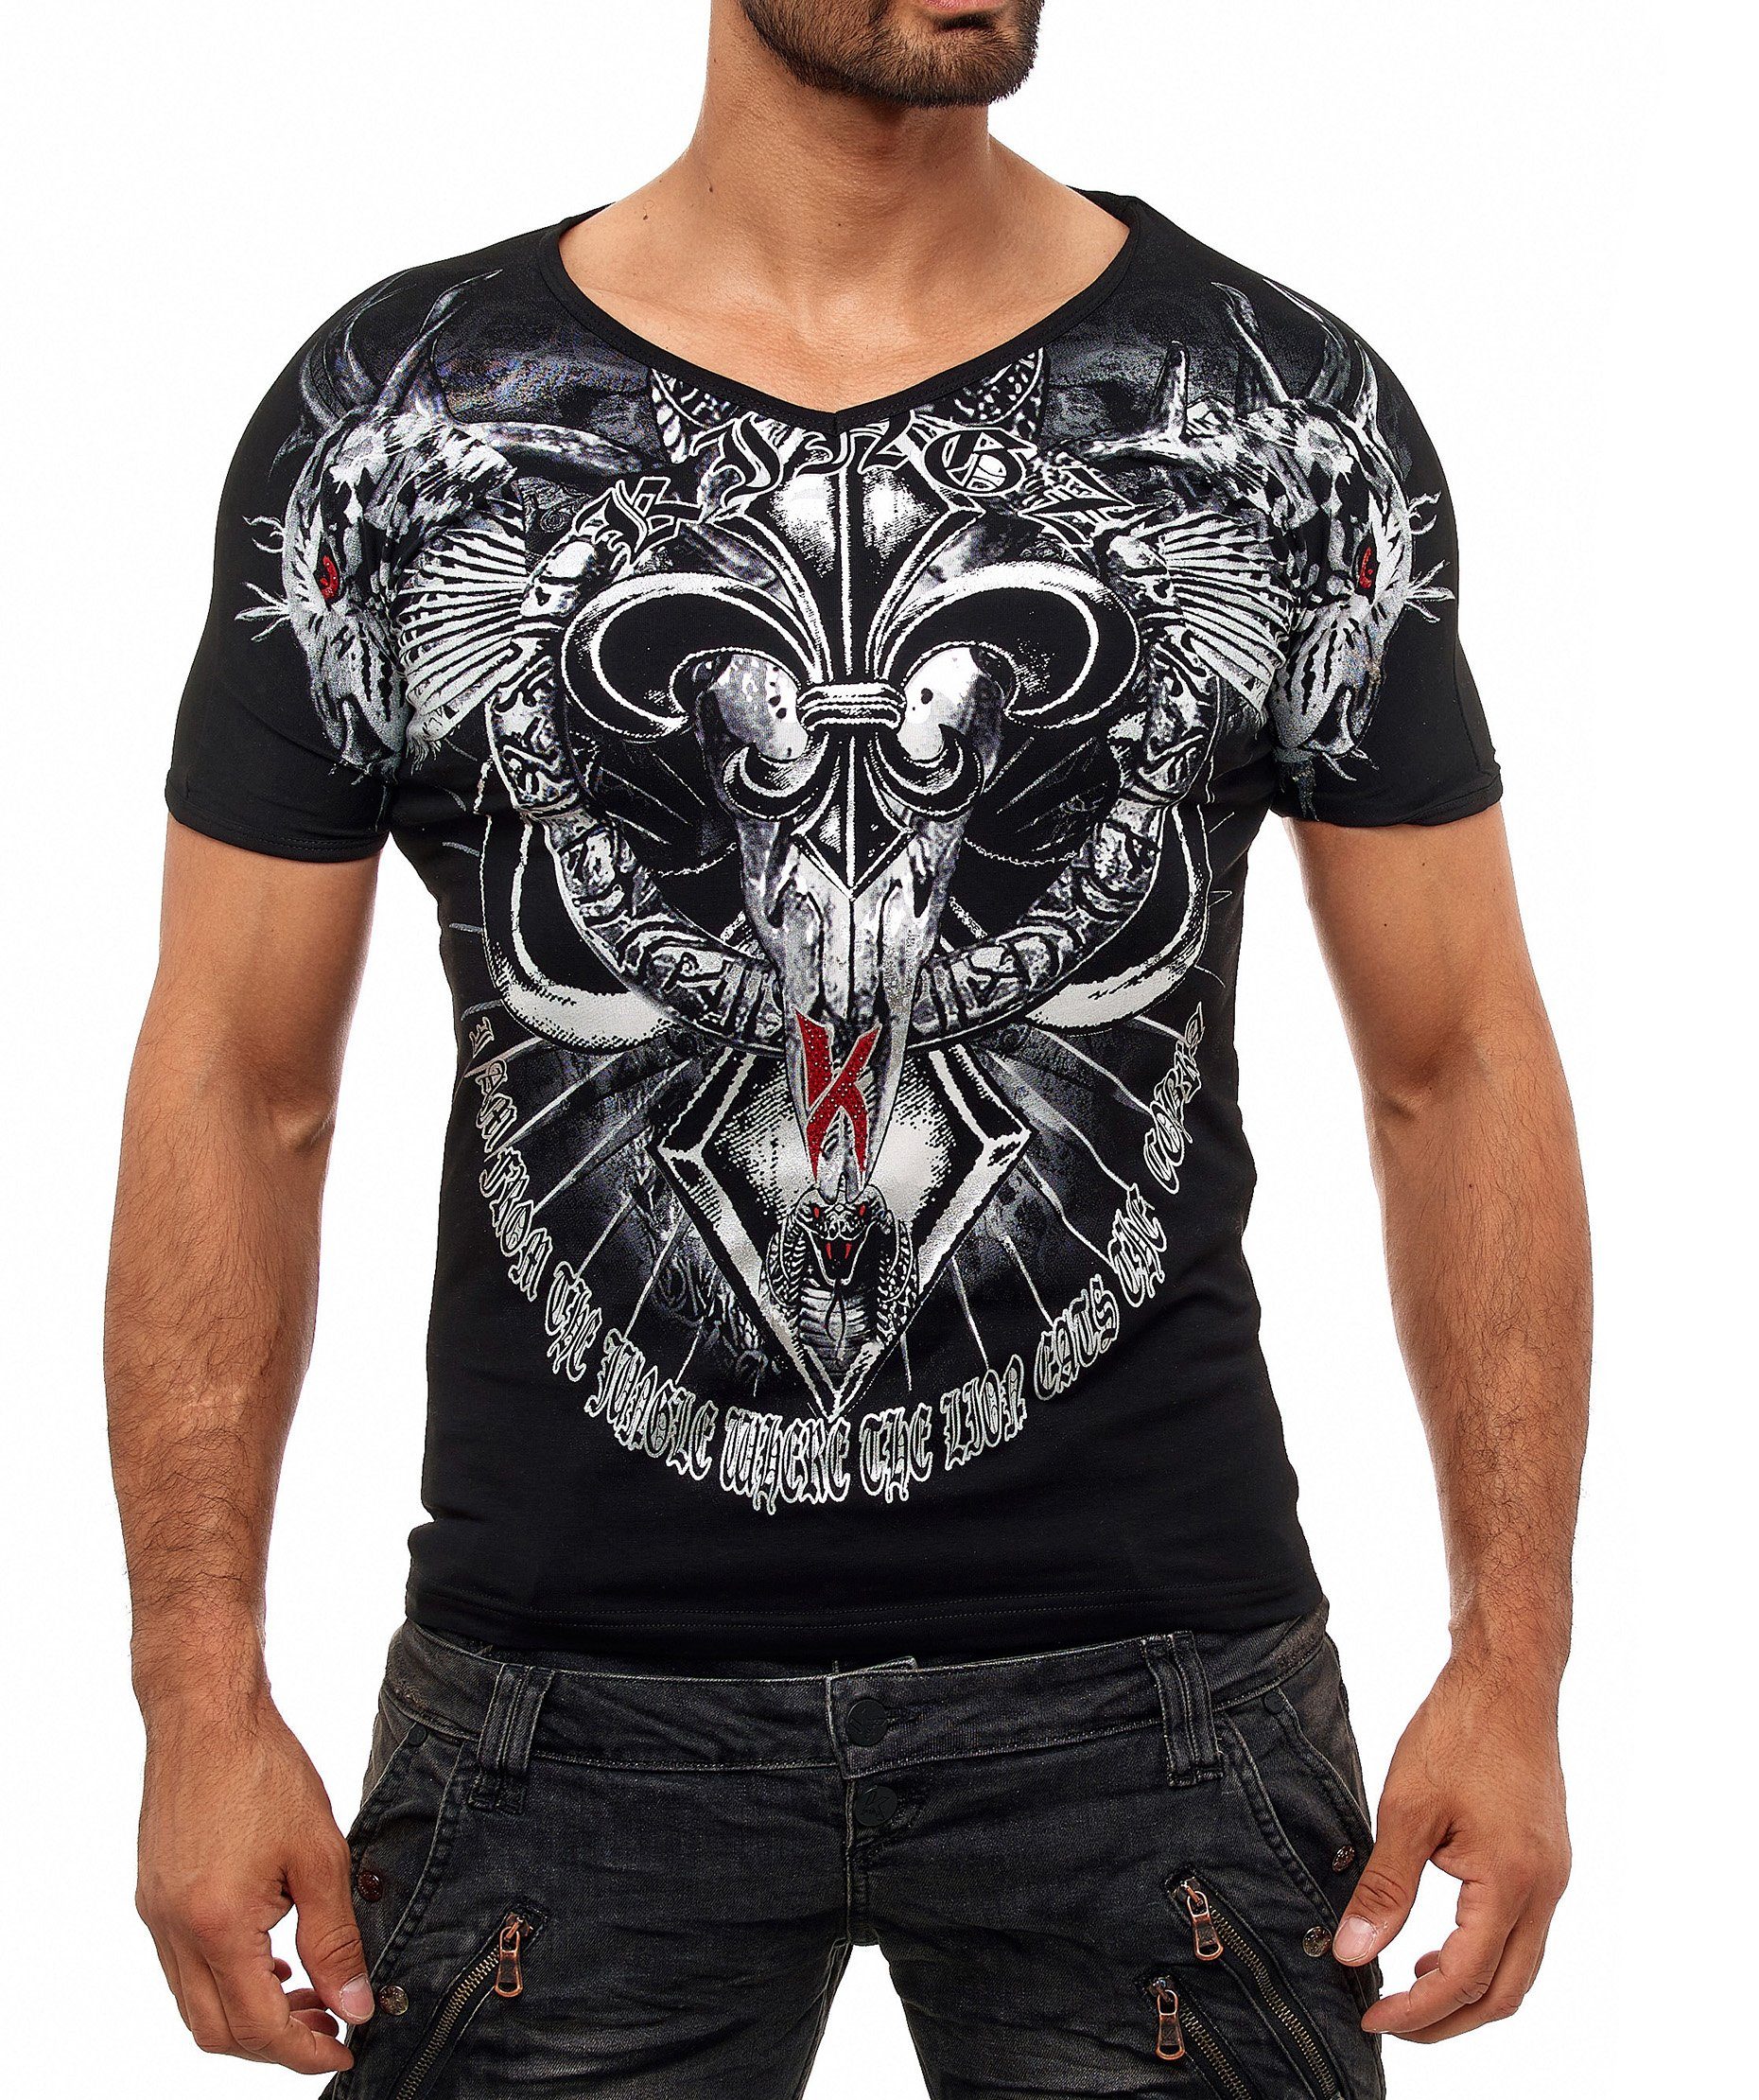 KINGZ T-Shirt mit ausgefallenem Cobra-Lilien-Print schwarz-silberfarben